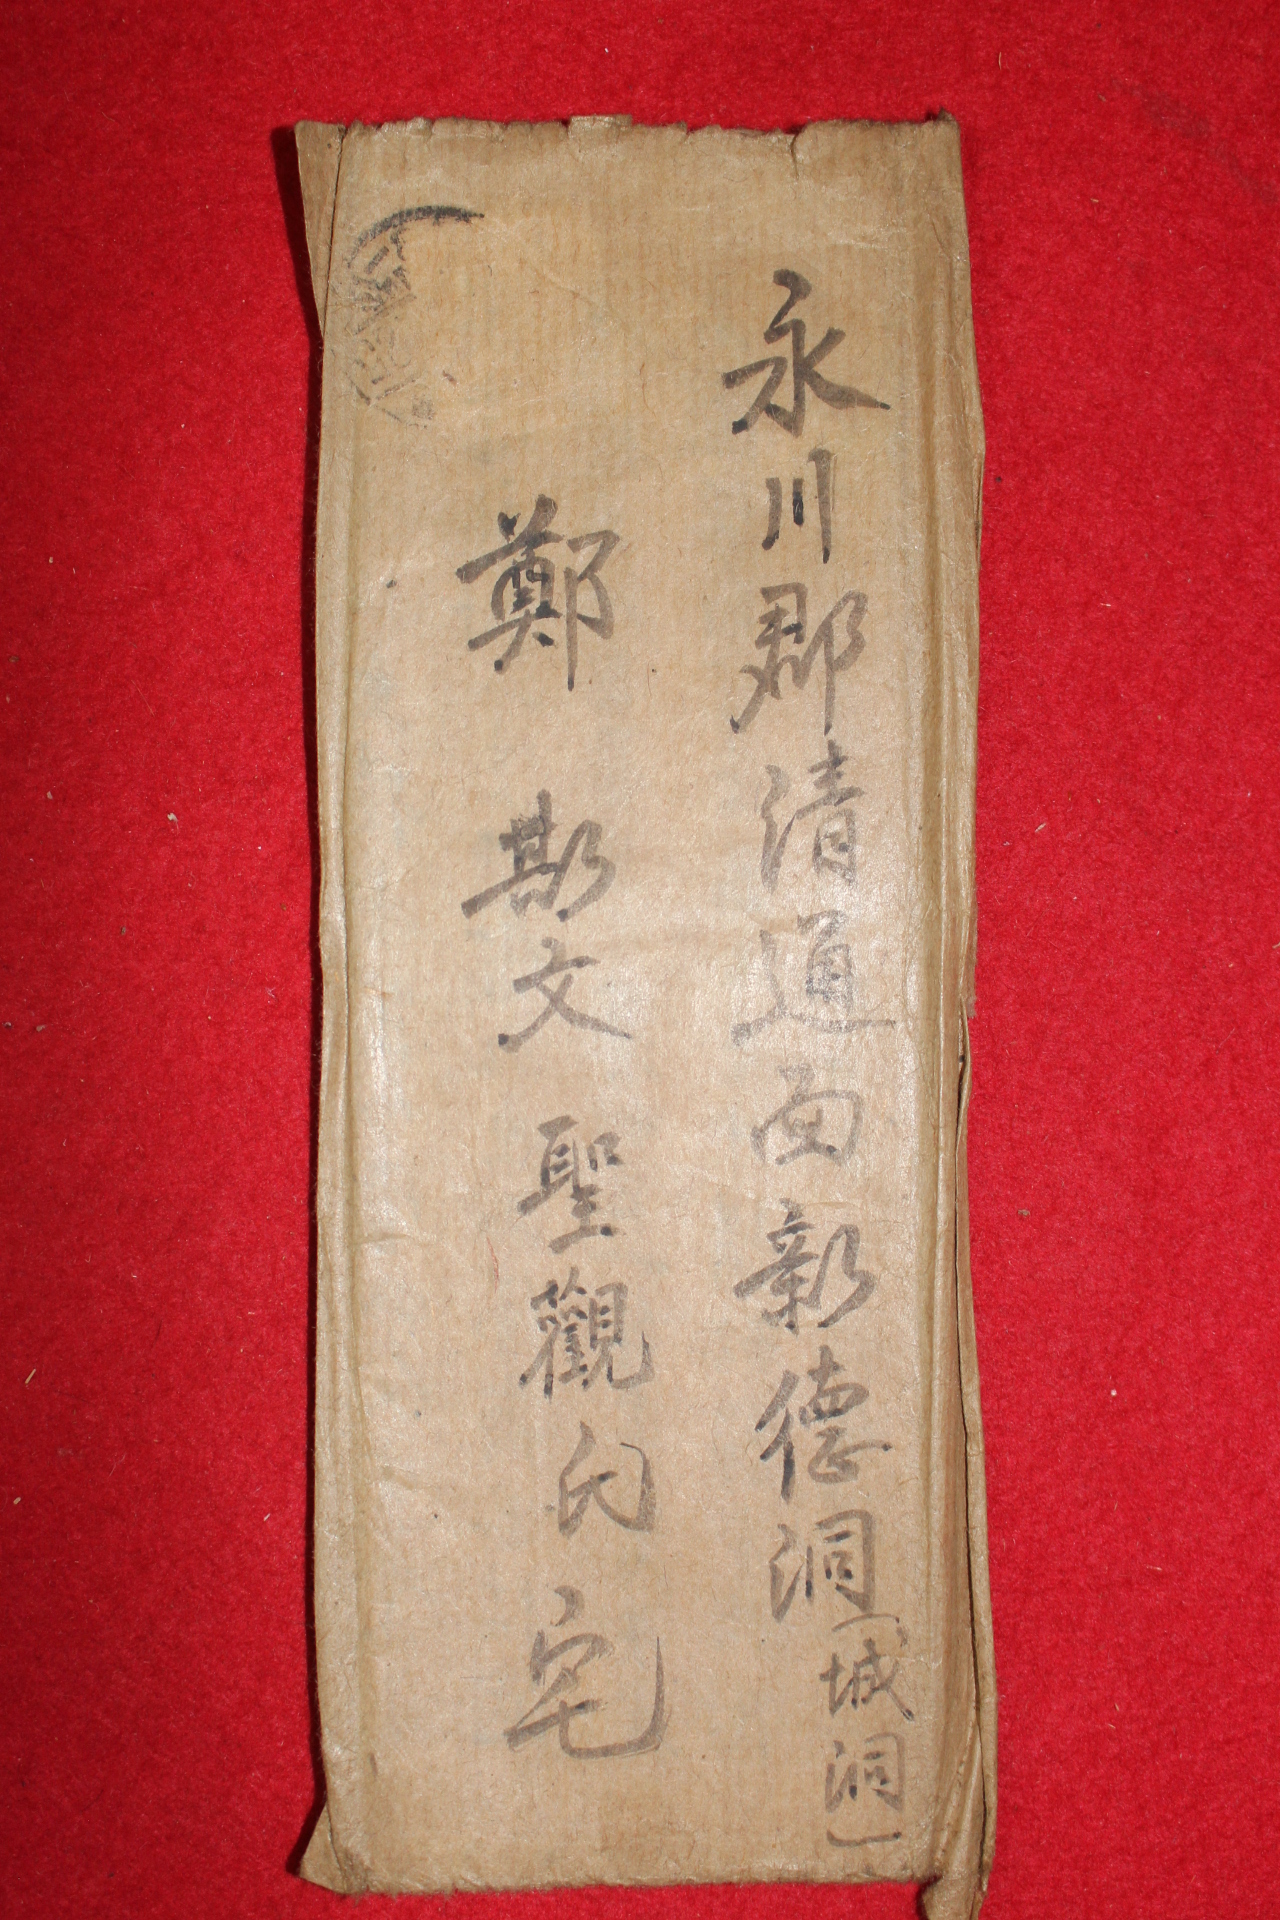 44-1937년(소화12년) 사천 서유(徐遊) 우편사용실체